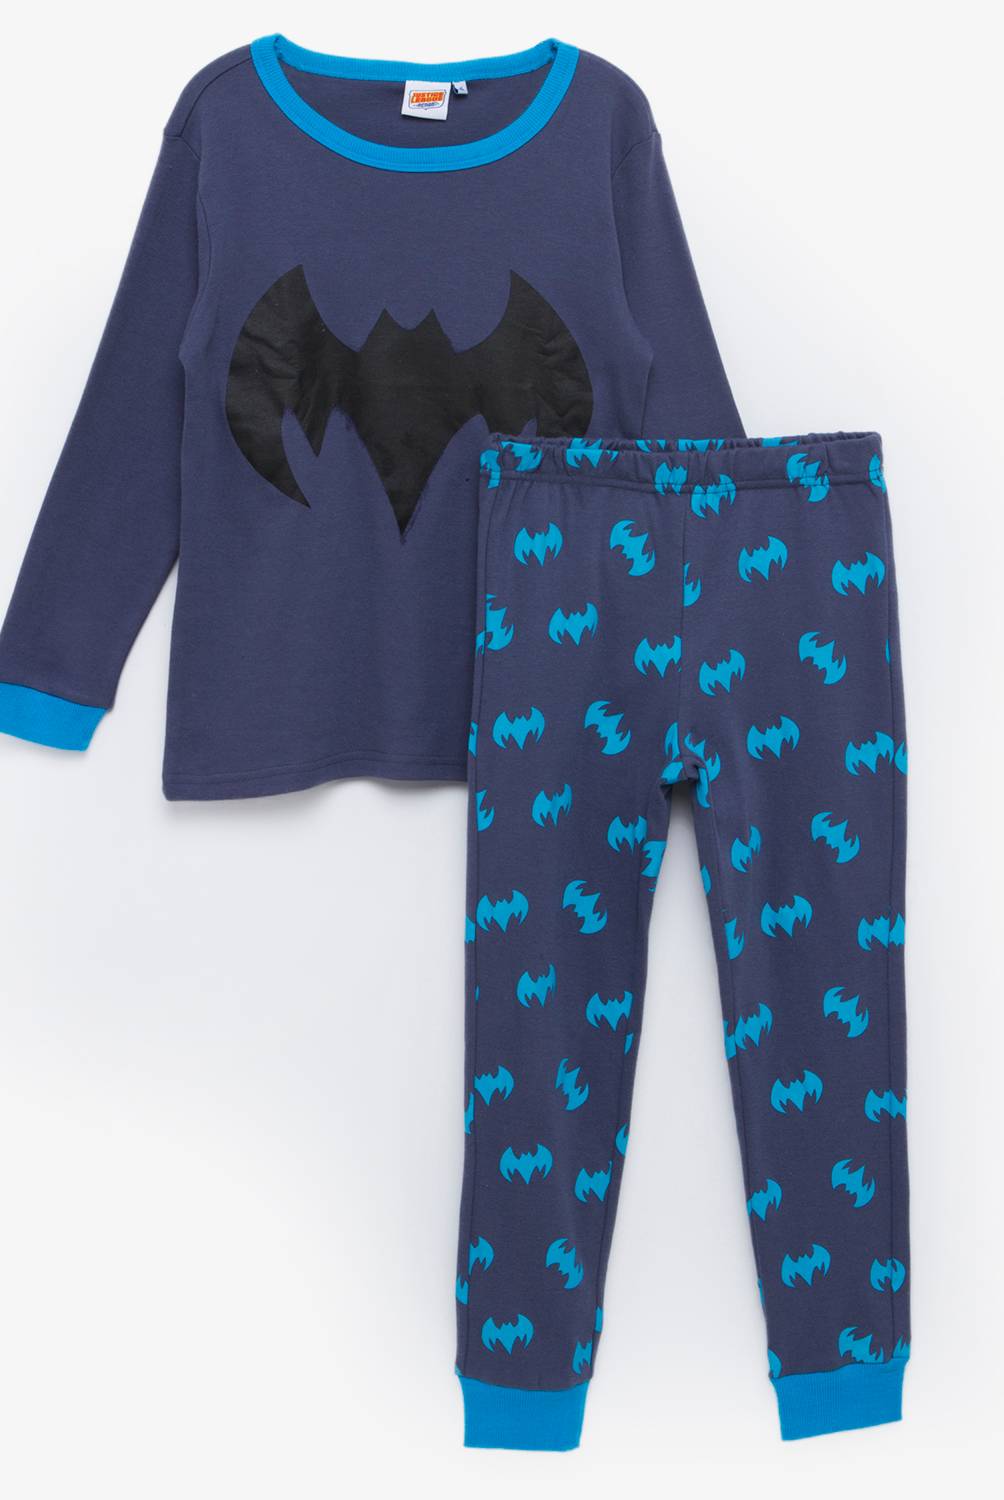 DC ORIGINALS - Pijama para Niño